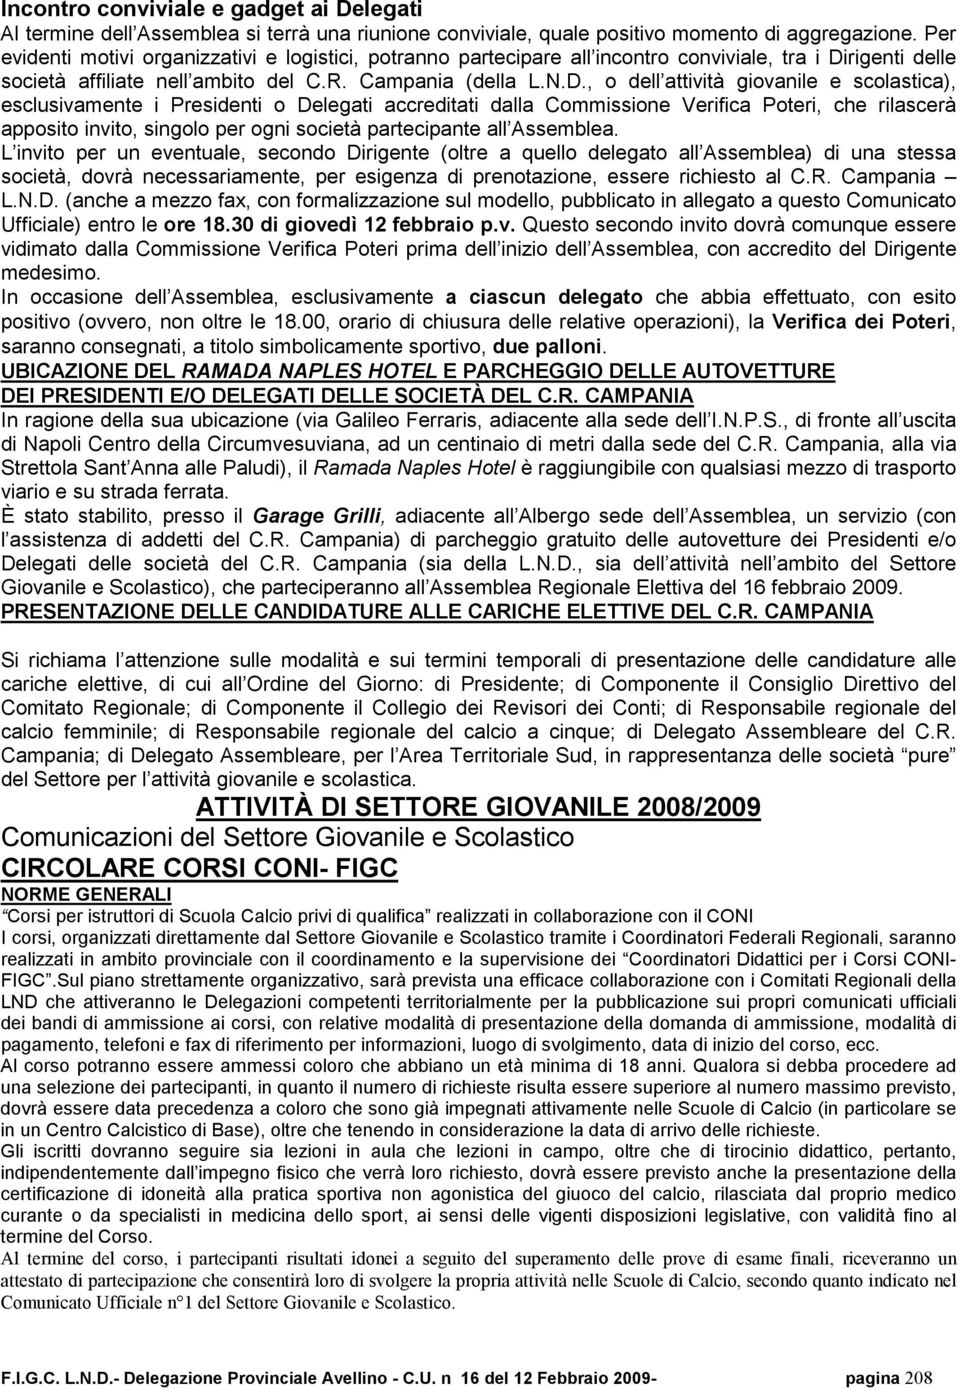 rigenti delle società affiliate nell ambito del C.R. Campania (della L.N.D.